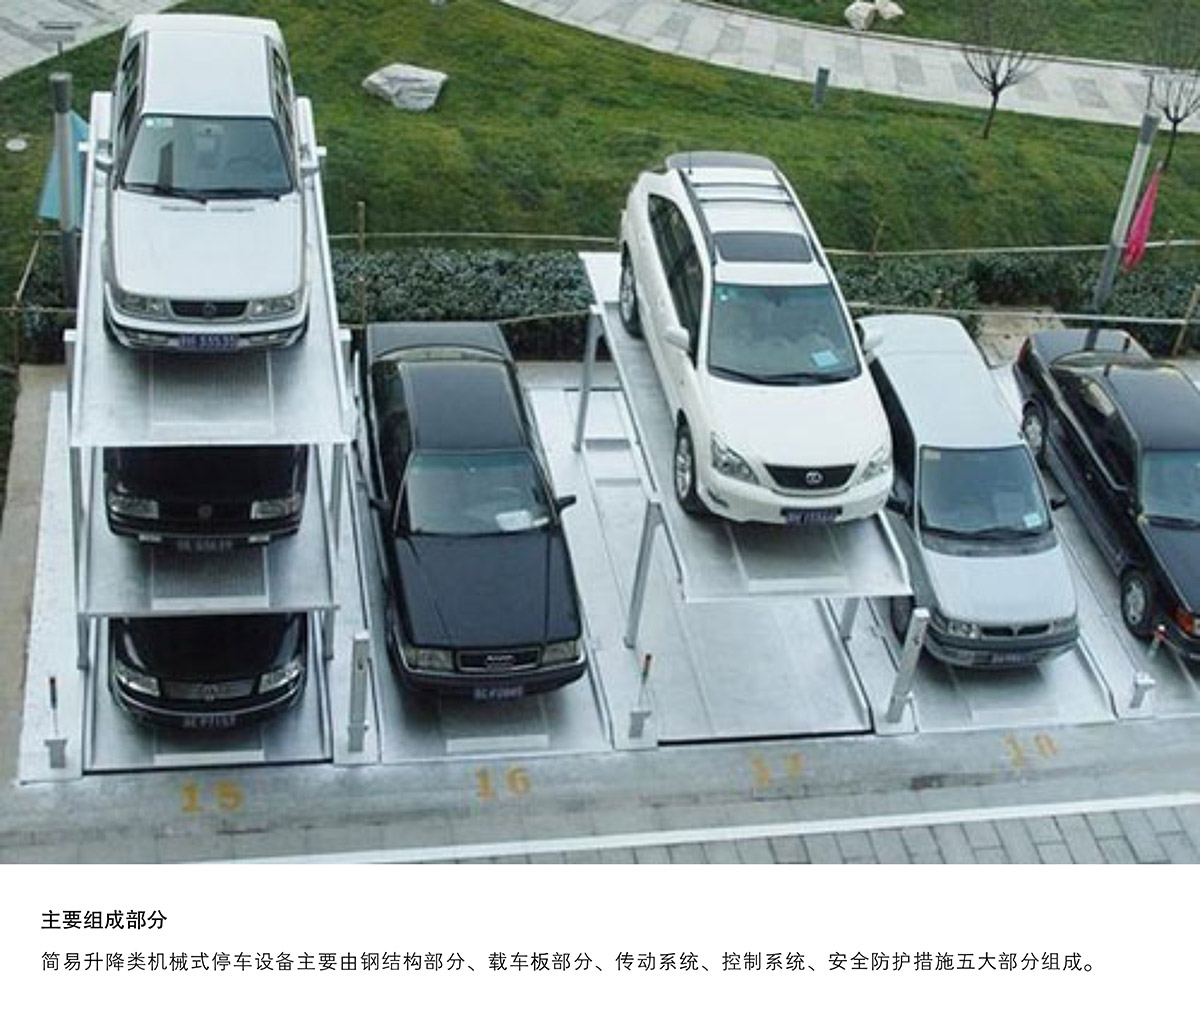 机械车位PJS3D2三层地坑简易升降停车设备主要组成部分.jpg